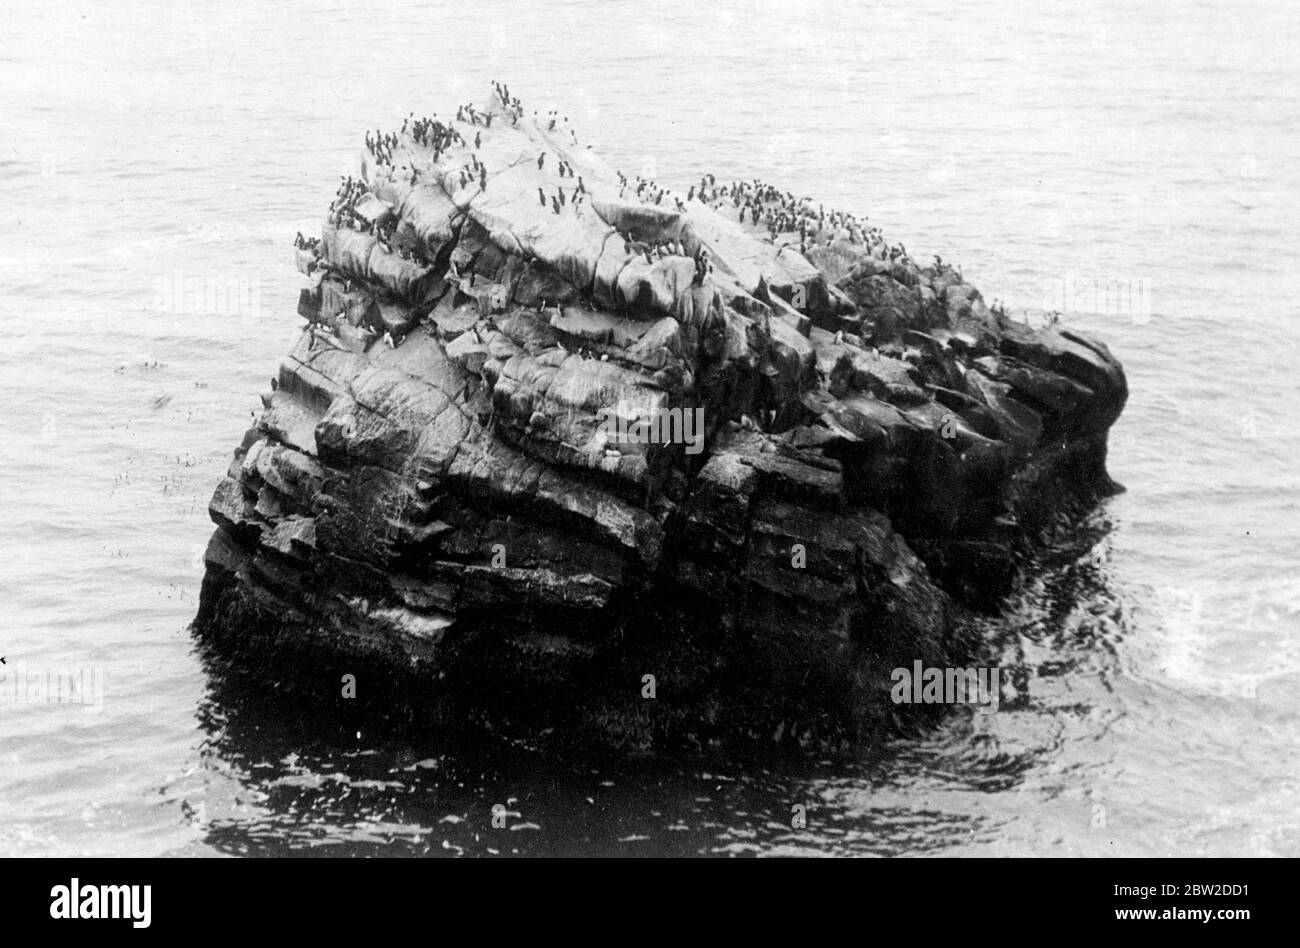 Ein düsterer, einsamer Felsen vor der Küste Sibiriens, der von den eisigen Gewässern des Beringmeeres, das von Seevögeln besiedelt wurde, gespült wird. Einige der Vögel können auf dem Wasser schwimmend gesehen werden, während sie Fische suchen. 24. Oktober 1938 Stockfoto